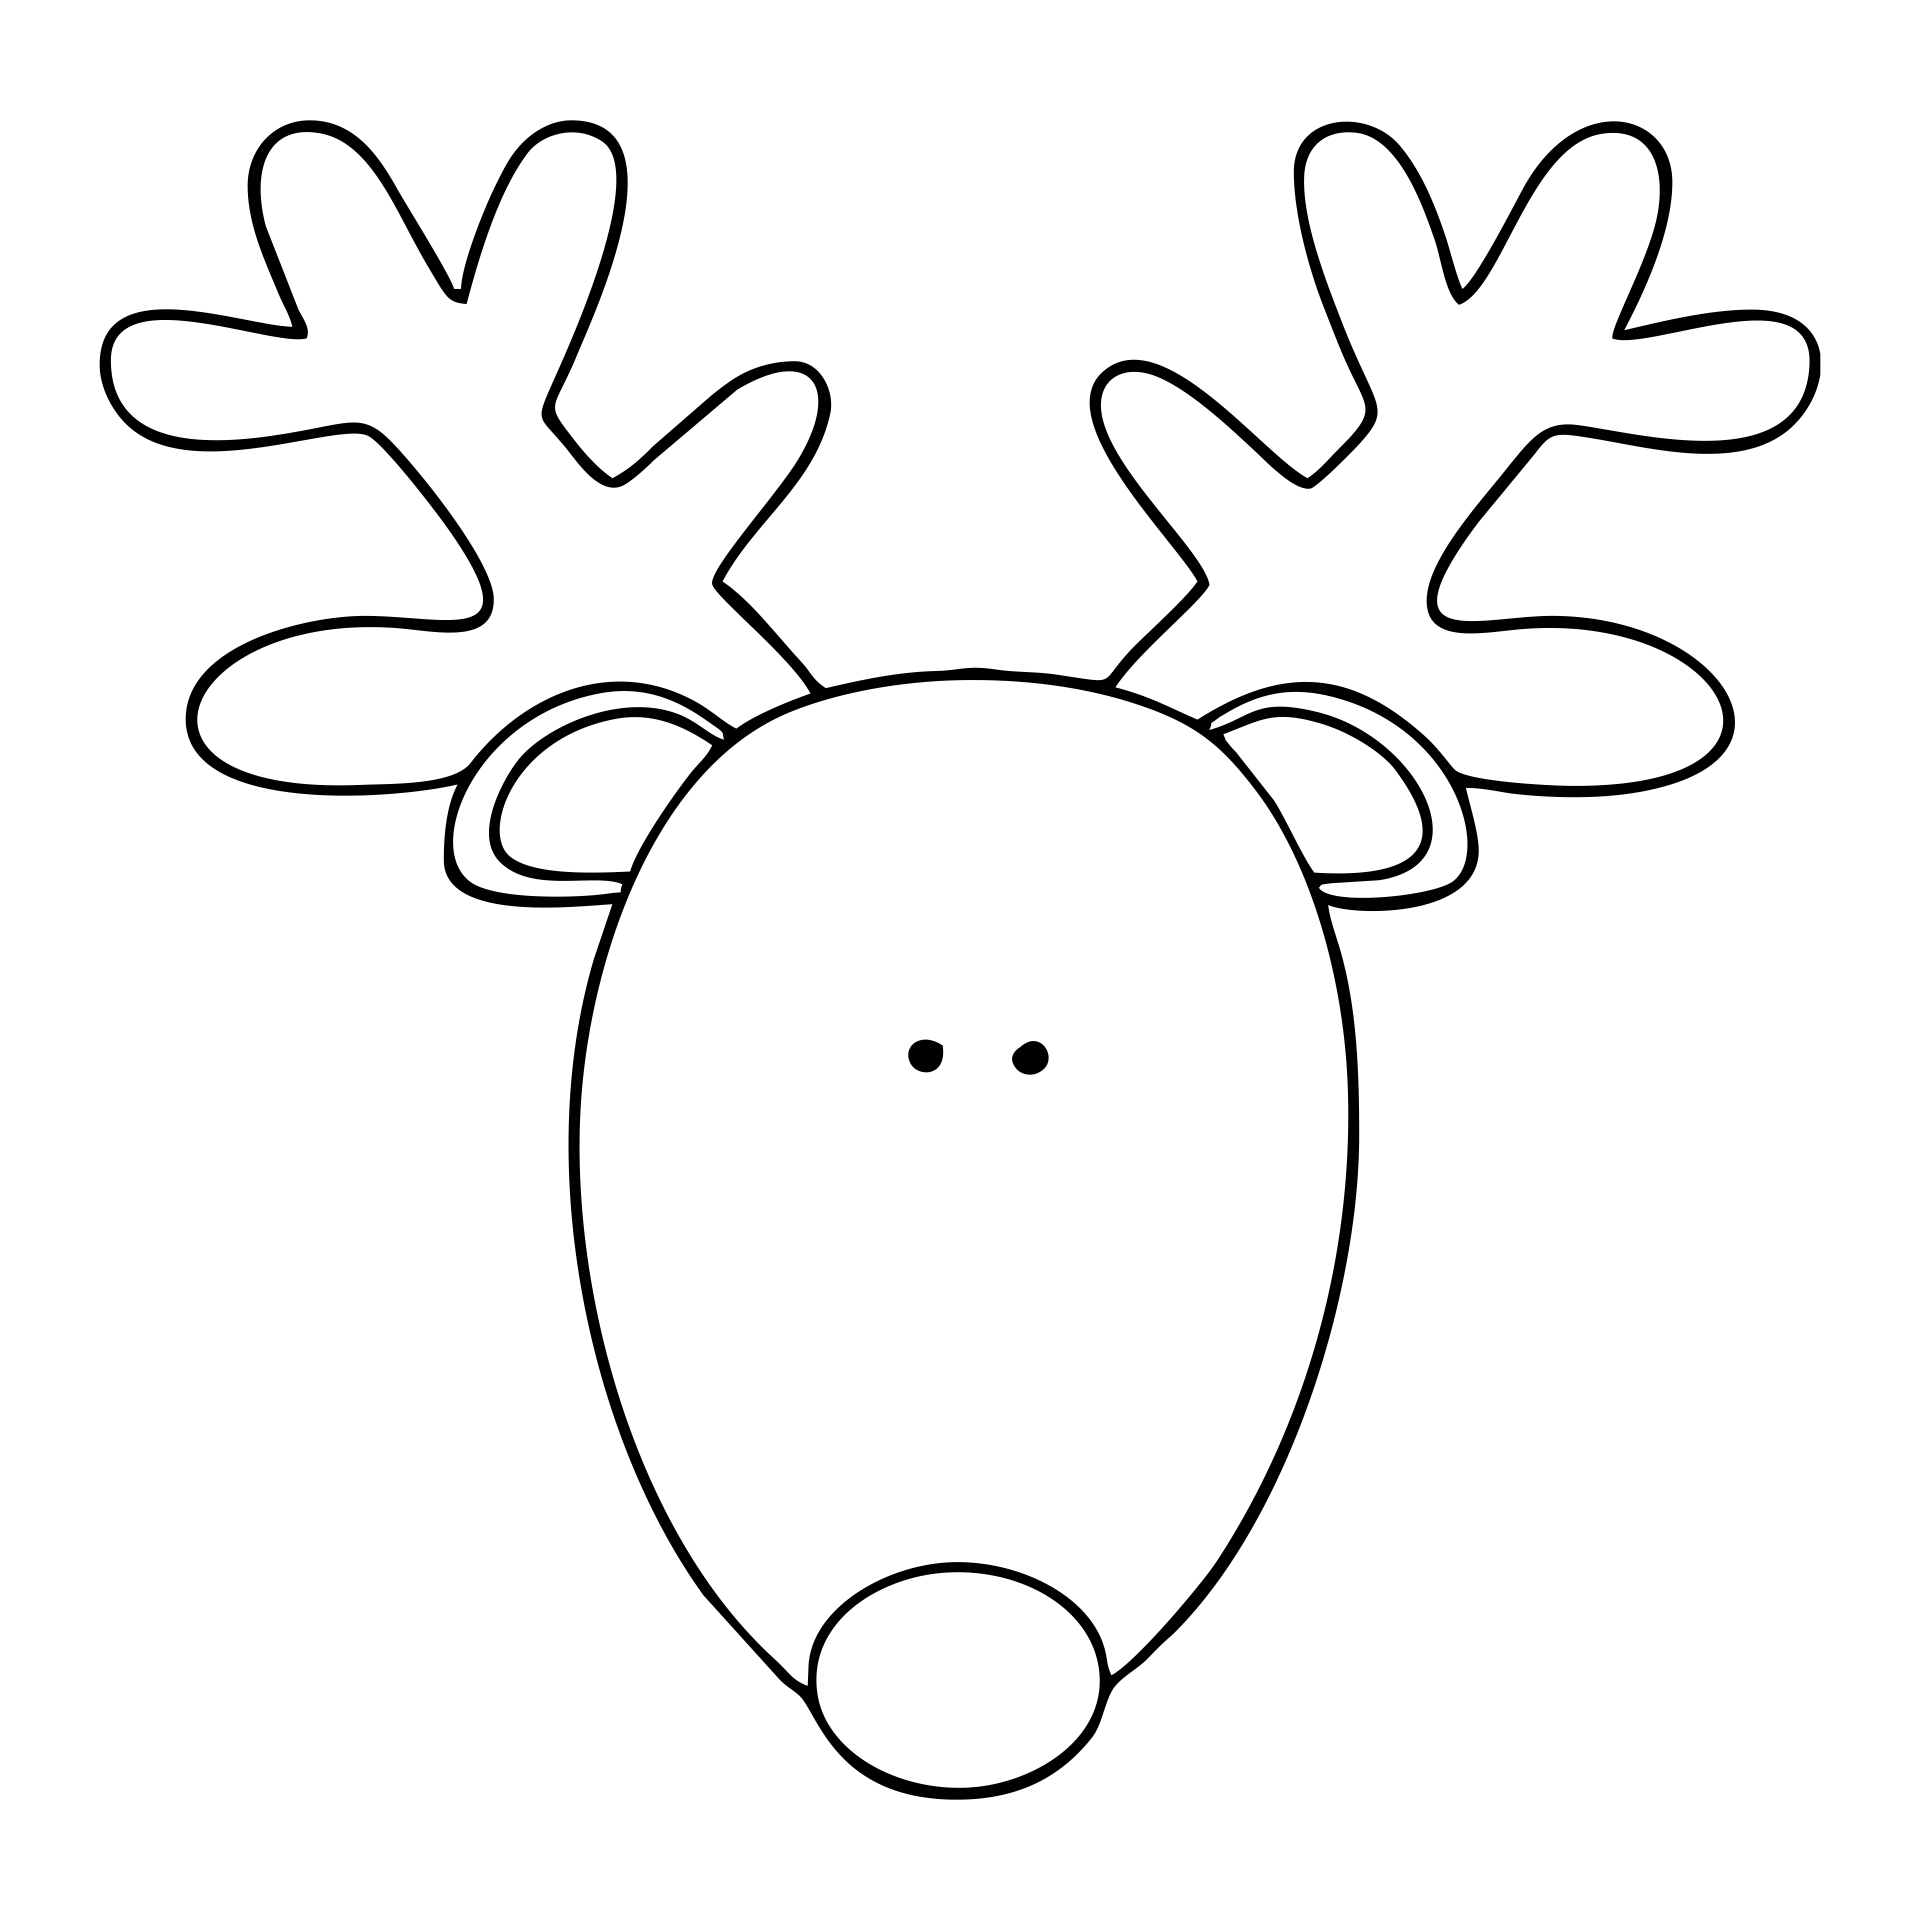 10 Best Printable Reindeer Patterns